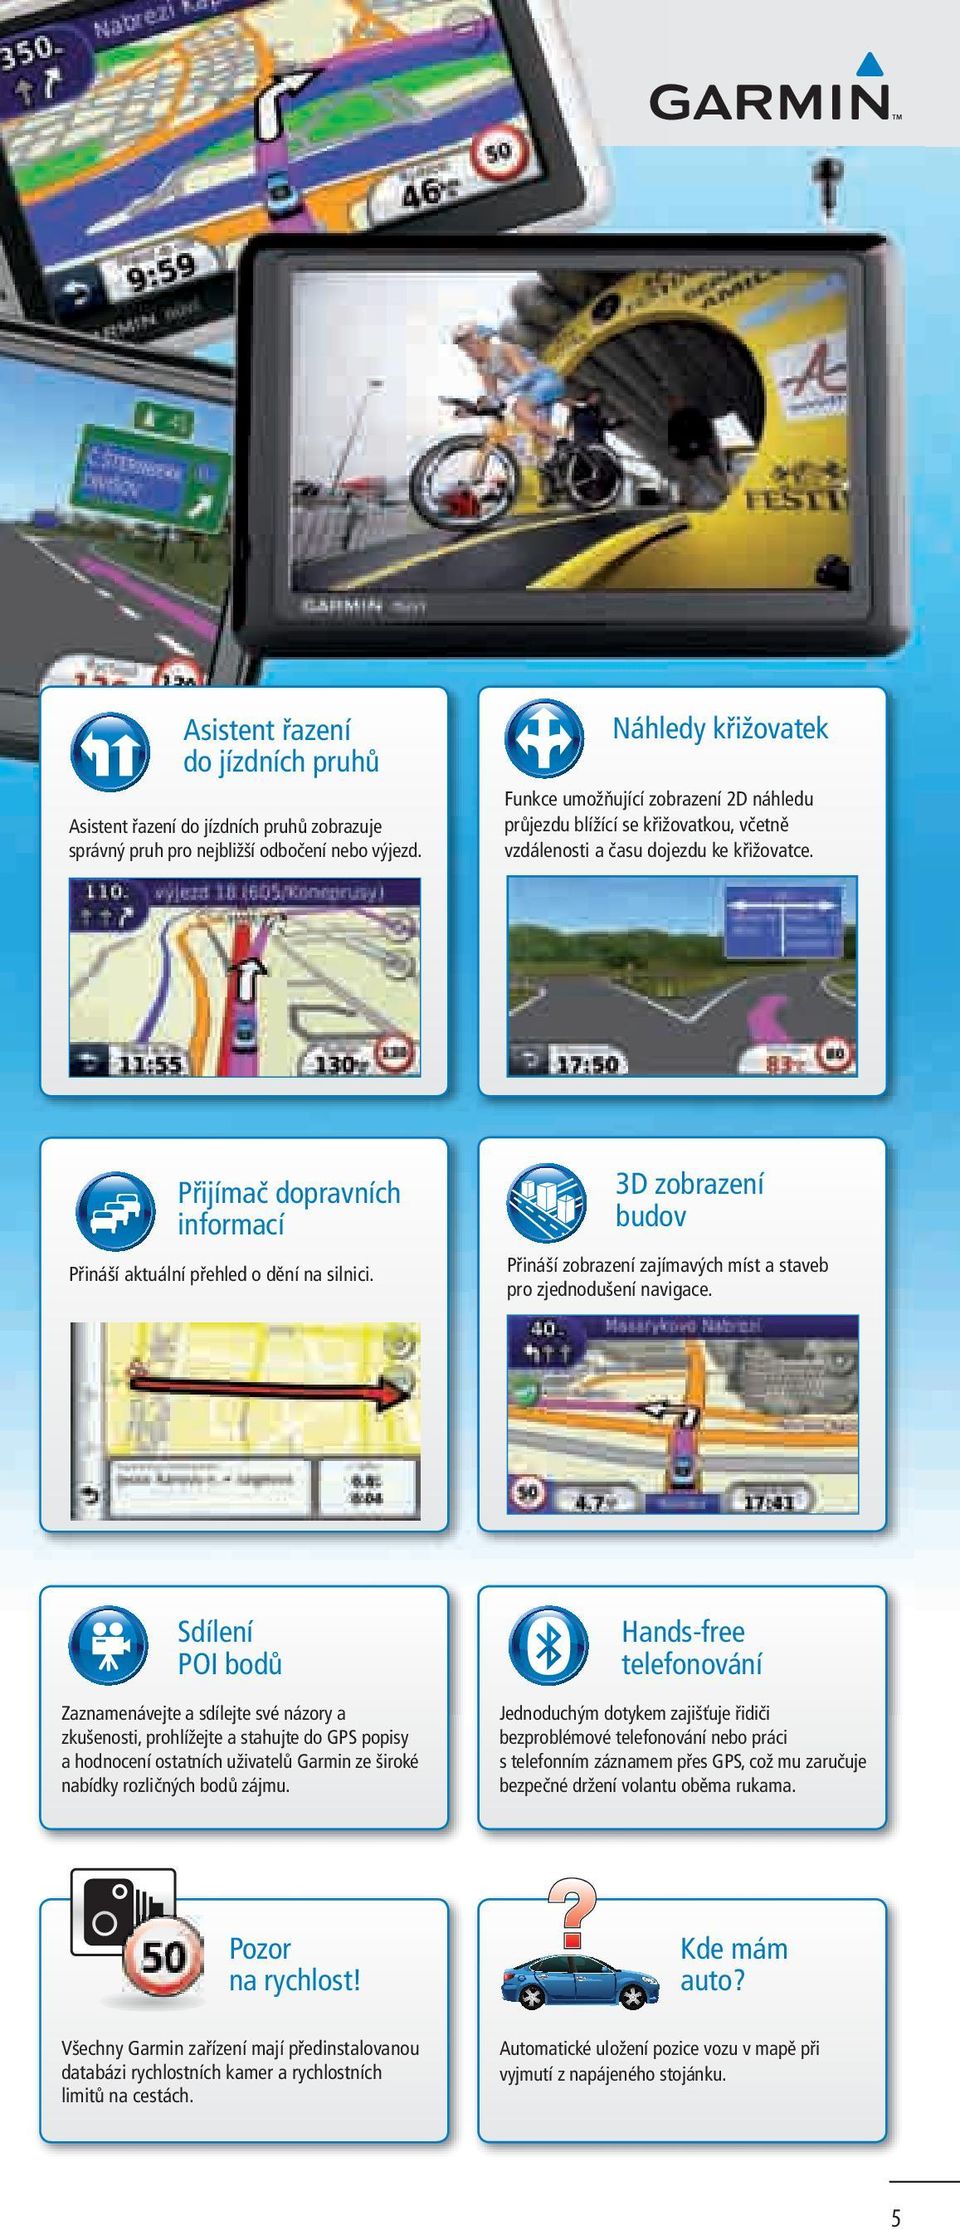 Přijímač dopravních informací Přináší aktuální přehled o dění na silnici. 3D zobrazení budov Přináší zobrazení zajímavých míst a staveb pro zjednodušení navigace.